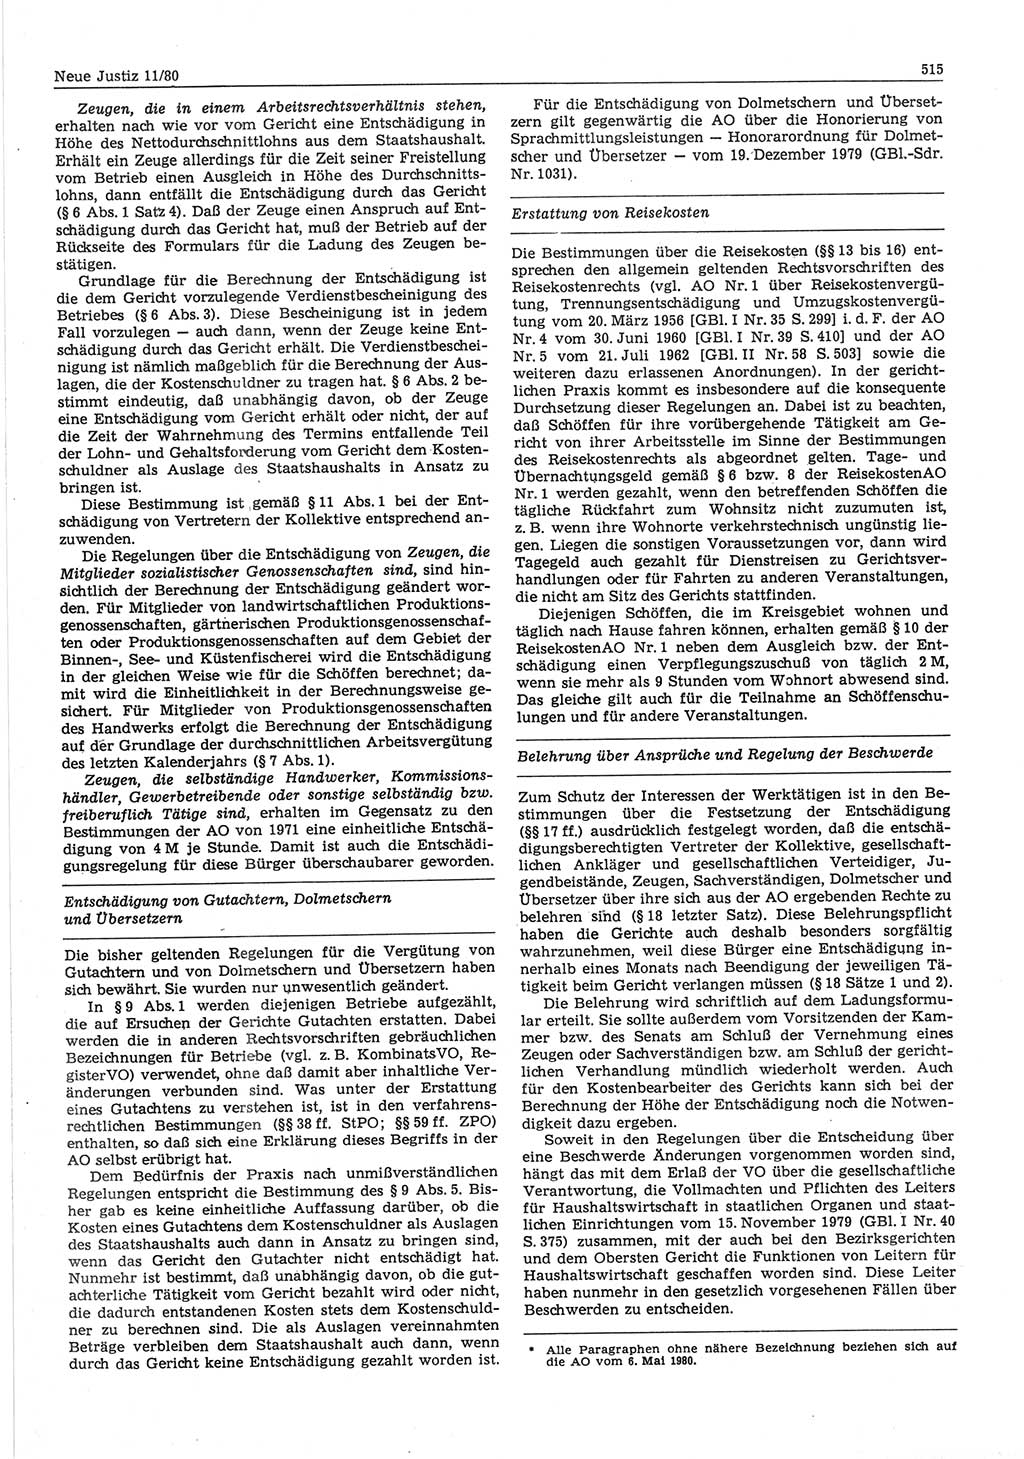 Neue Justiz (NJ), Zeitschrift für sozialistisches Recht und Gesetzlichkeit [Deutsche Demokratische Republik (DDR)], 34. Jahrgang 1980, Seite 515 (NJ DDR 1980, S. 515)